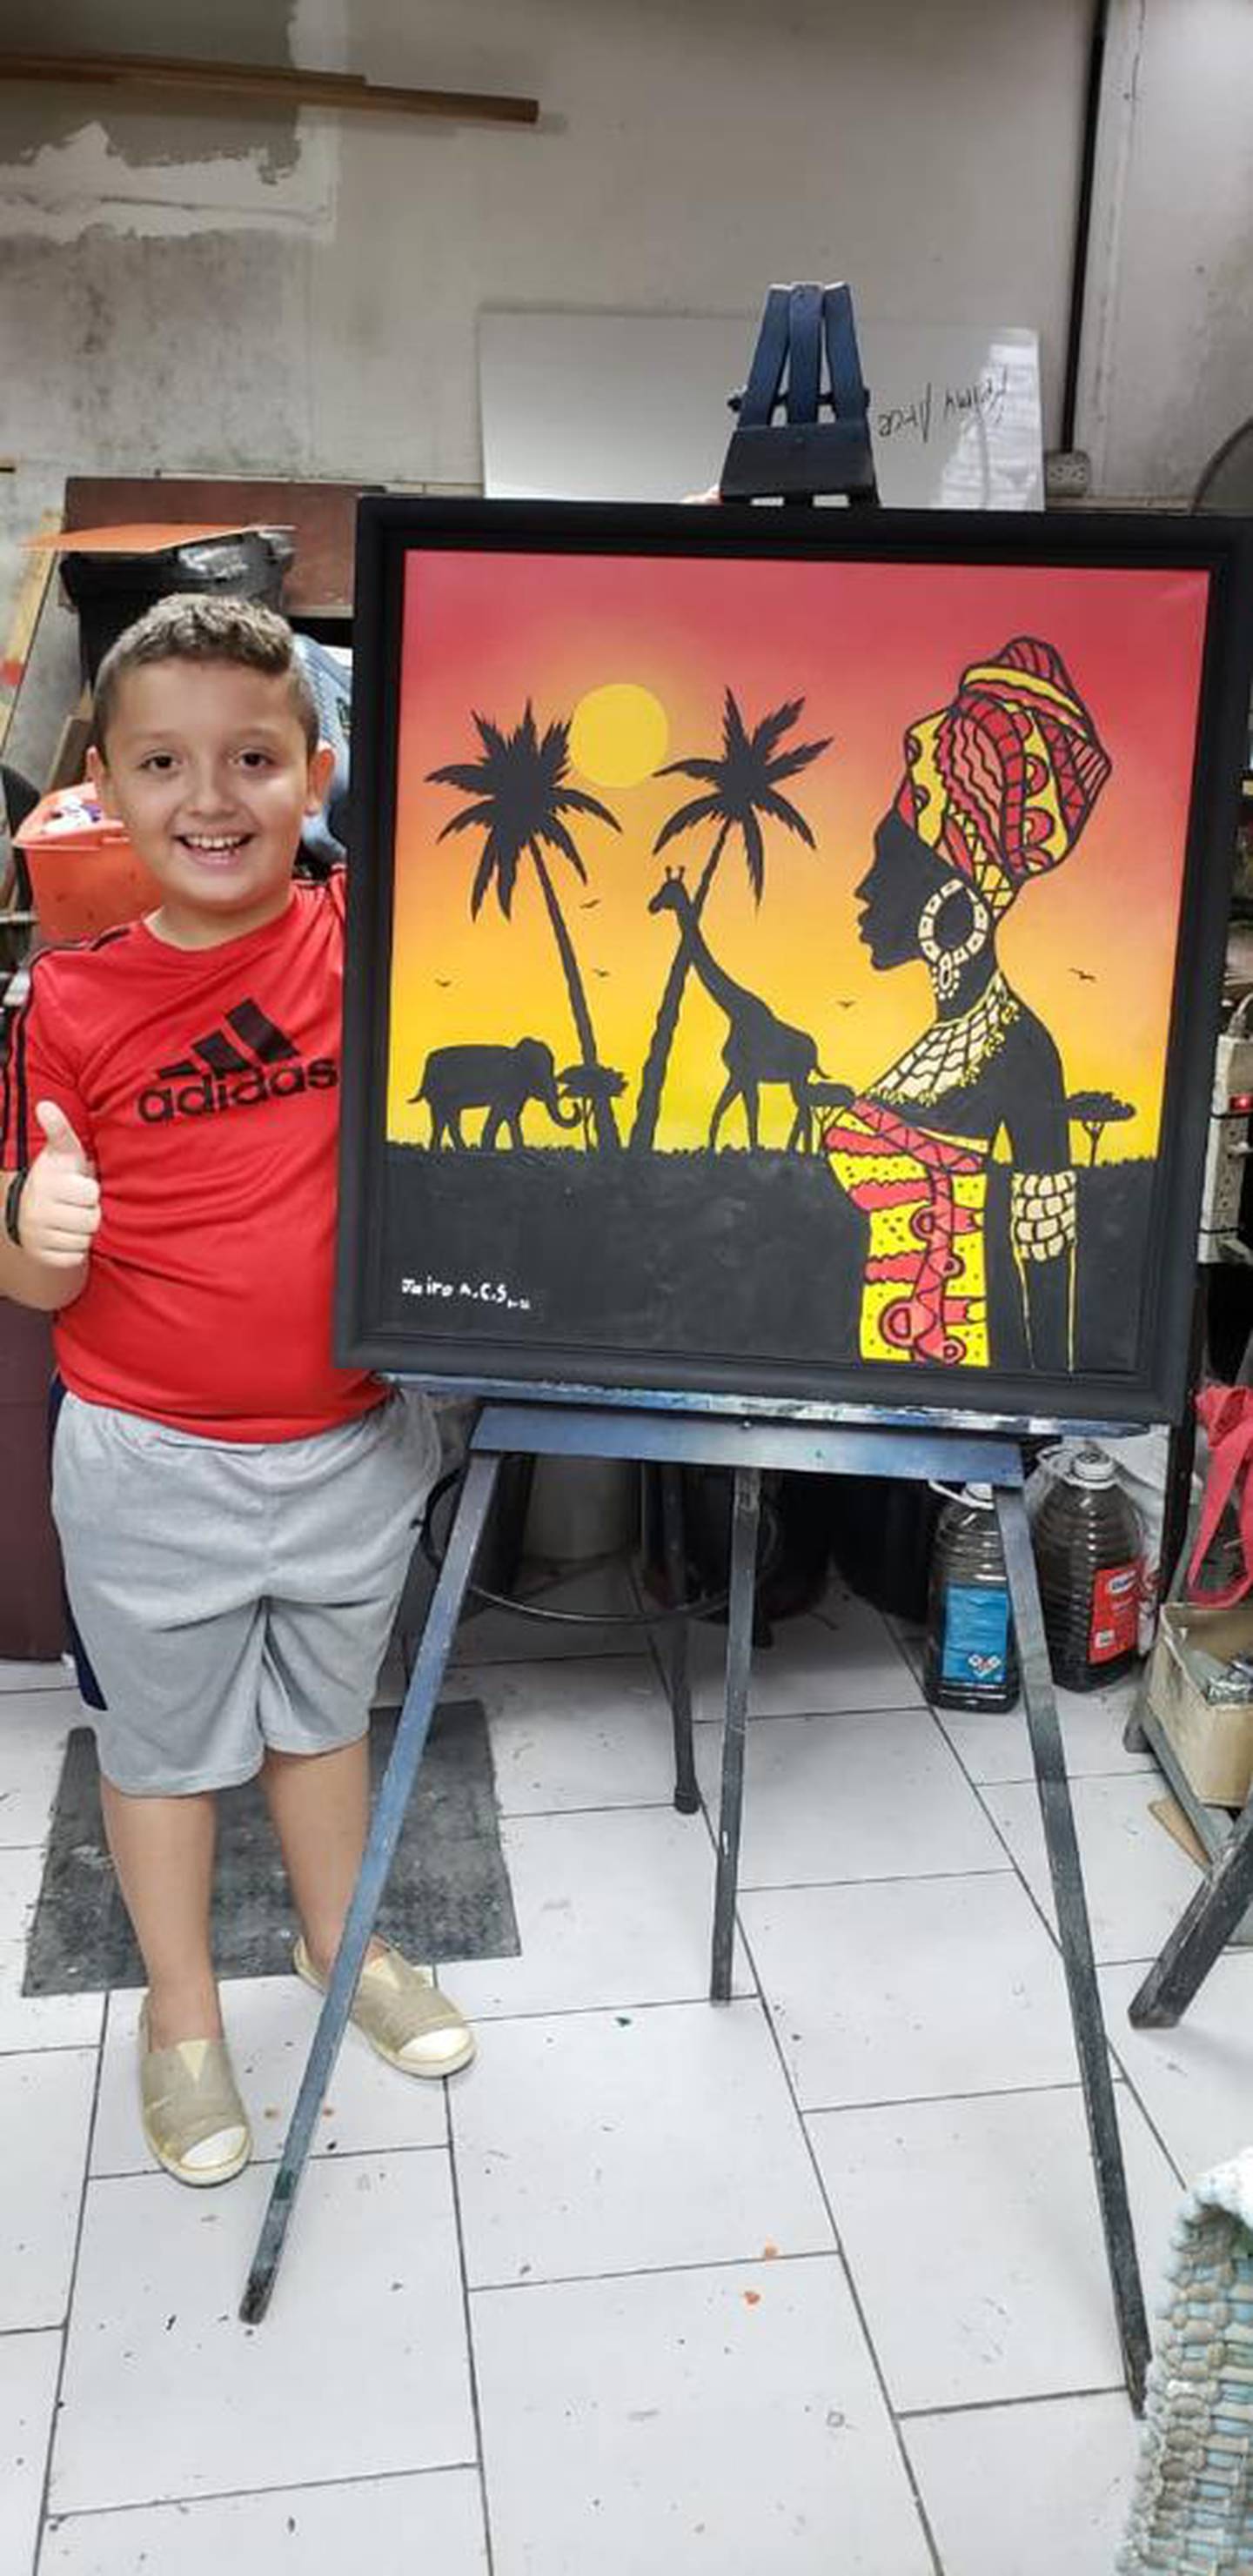 Jairo Adrián Cordero Sancho es a sus nueve años un pintor profesional, porque los cuadros que hace se le venden muy bien. Ama lo que hace y asegura que cuando esté grande será mejor pintor que italianos Miguel Ángel Buonarroti y Leonardo Da Vinci